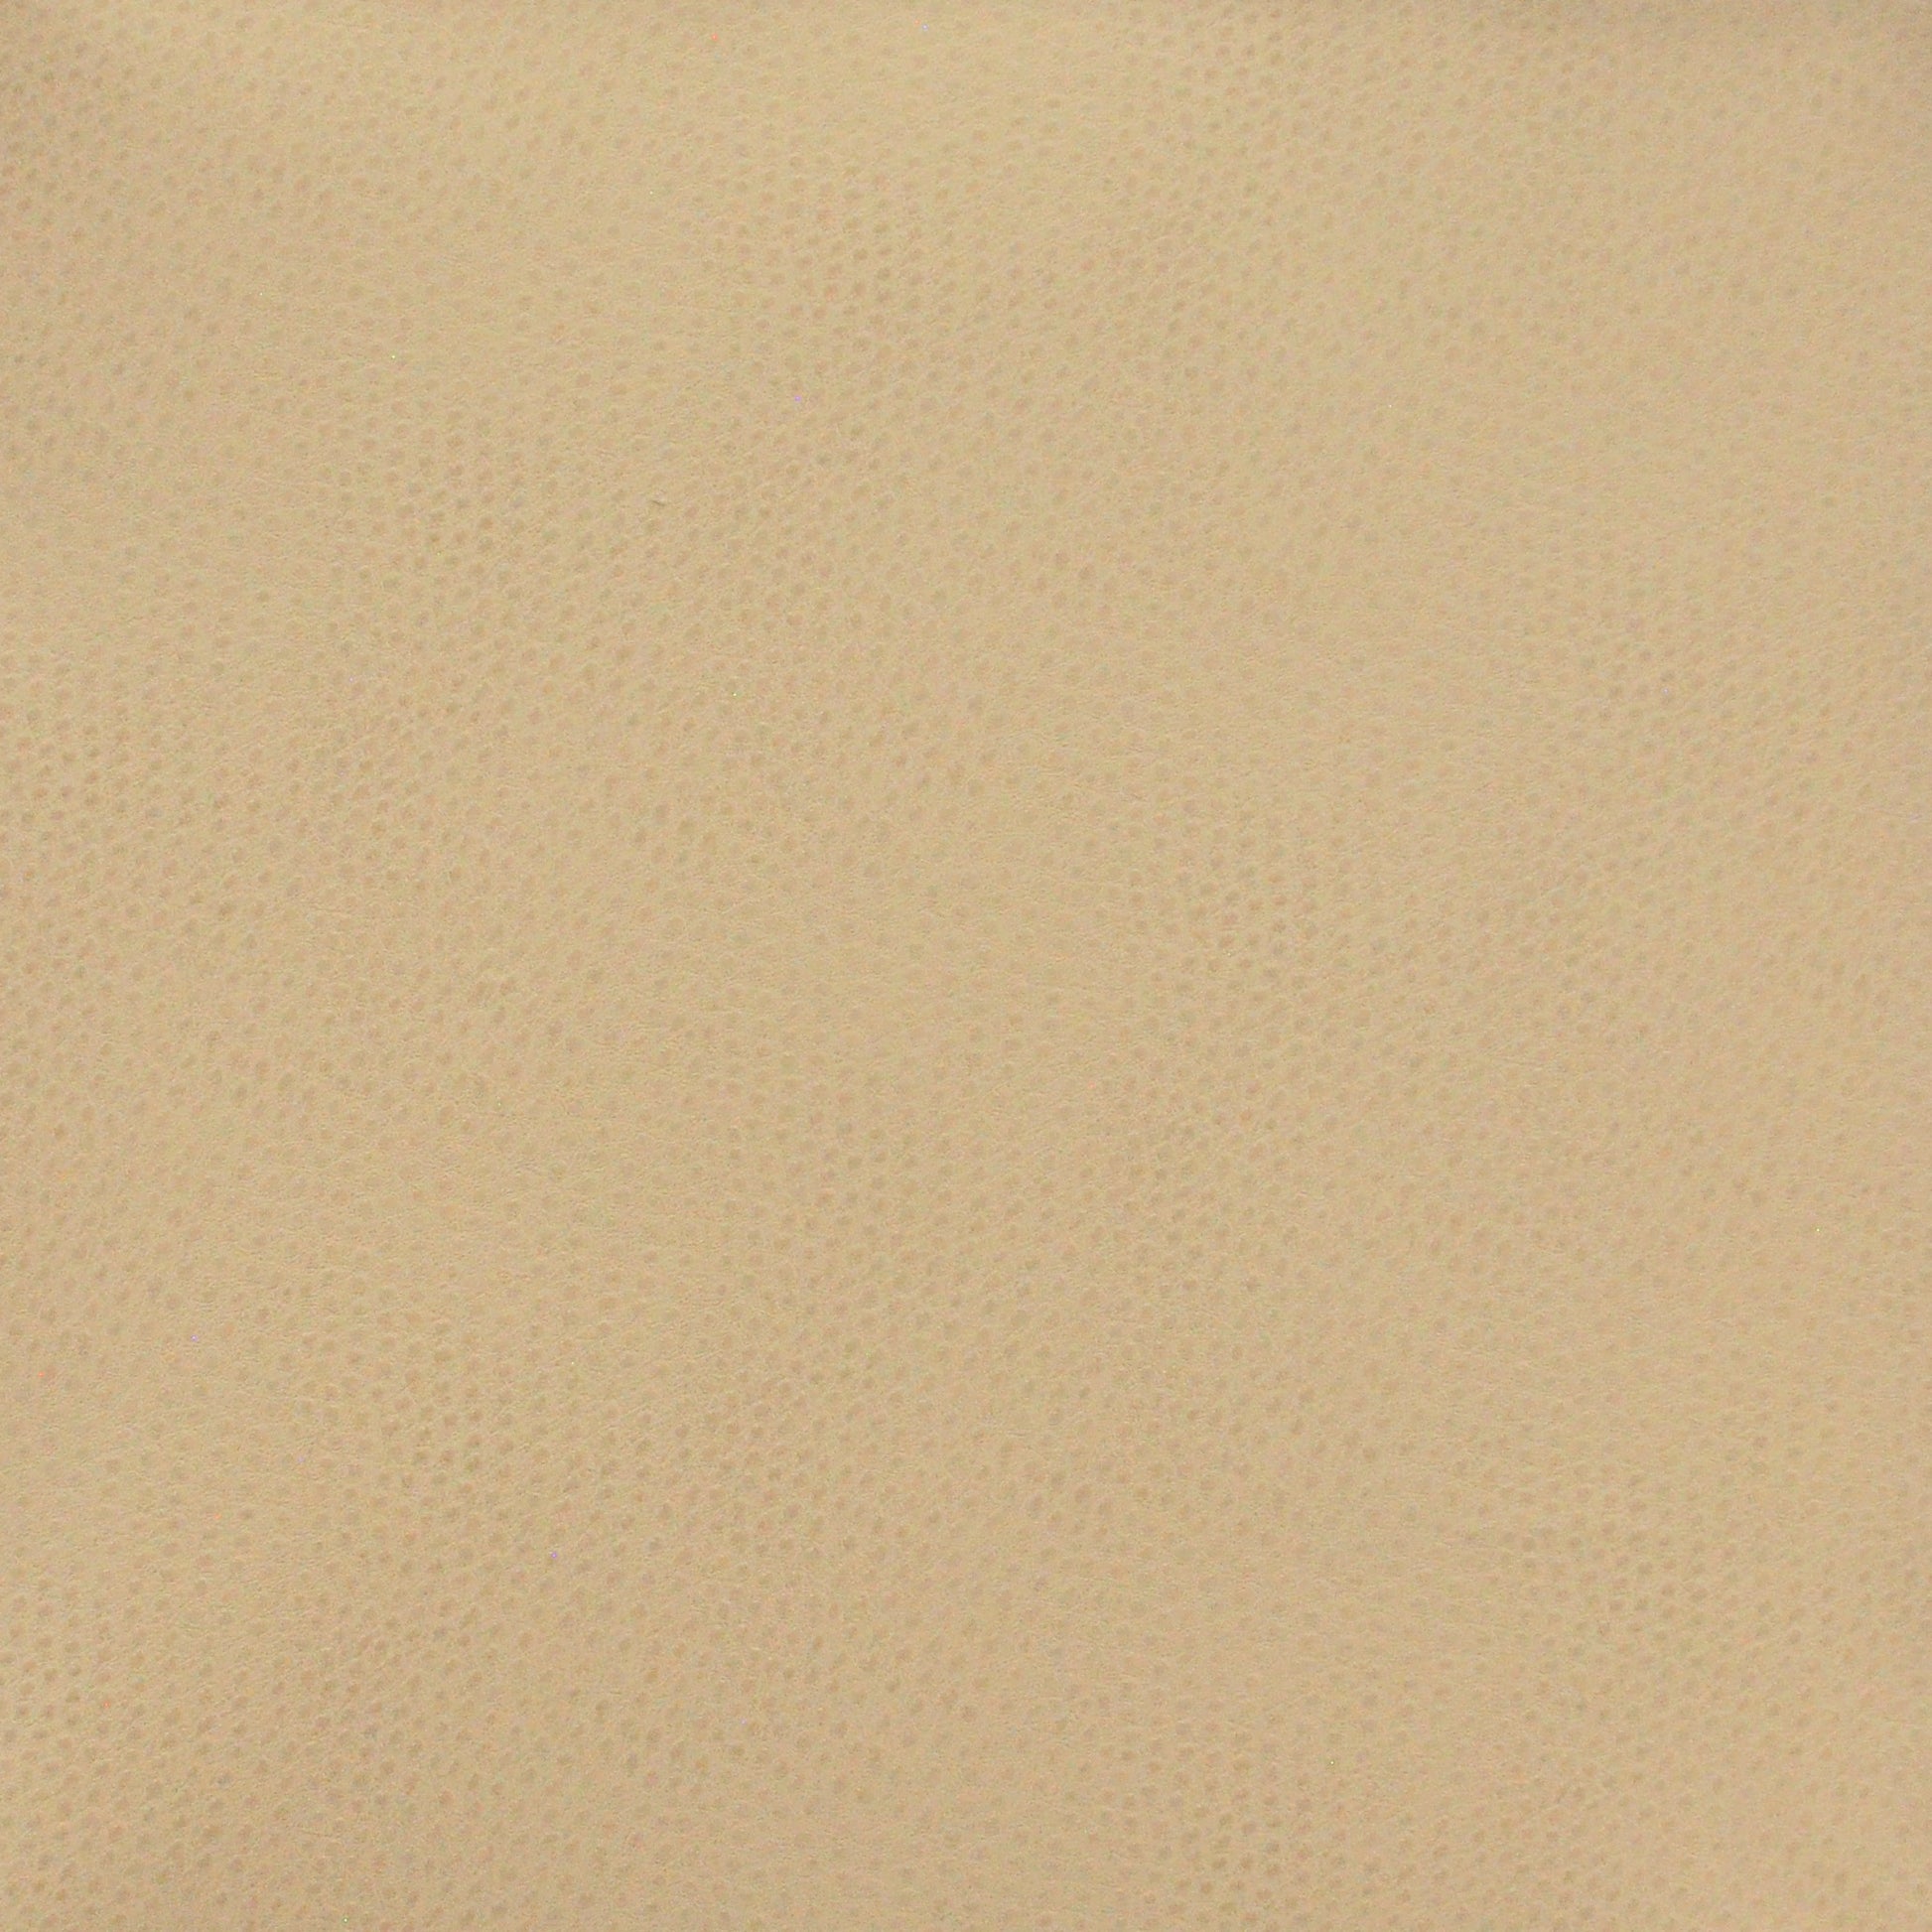 Purchase Maxwell Fabric - Buckeye, # 764 Sand